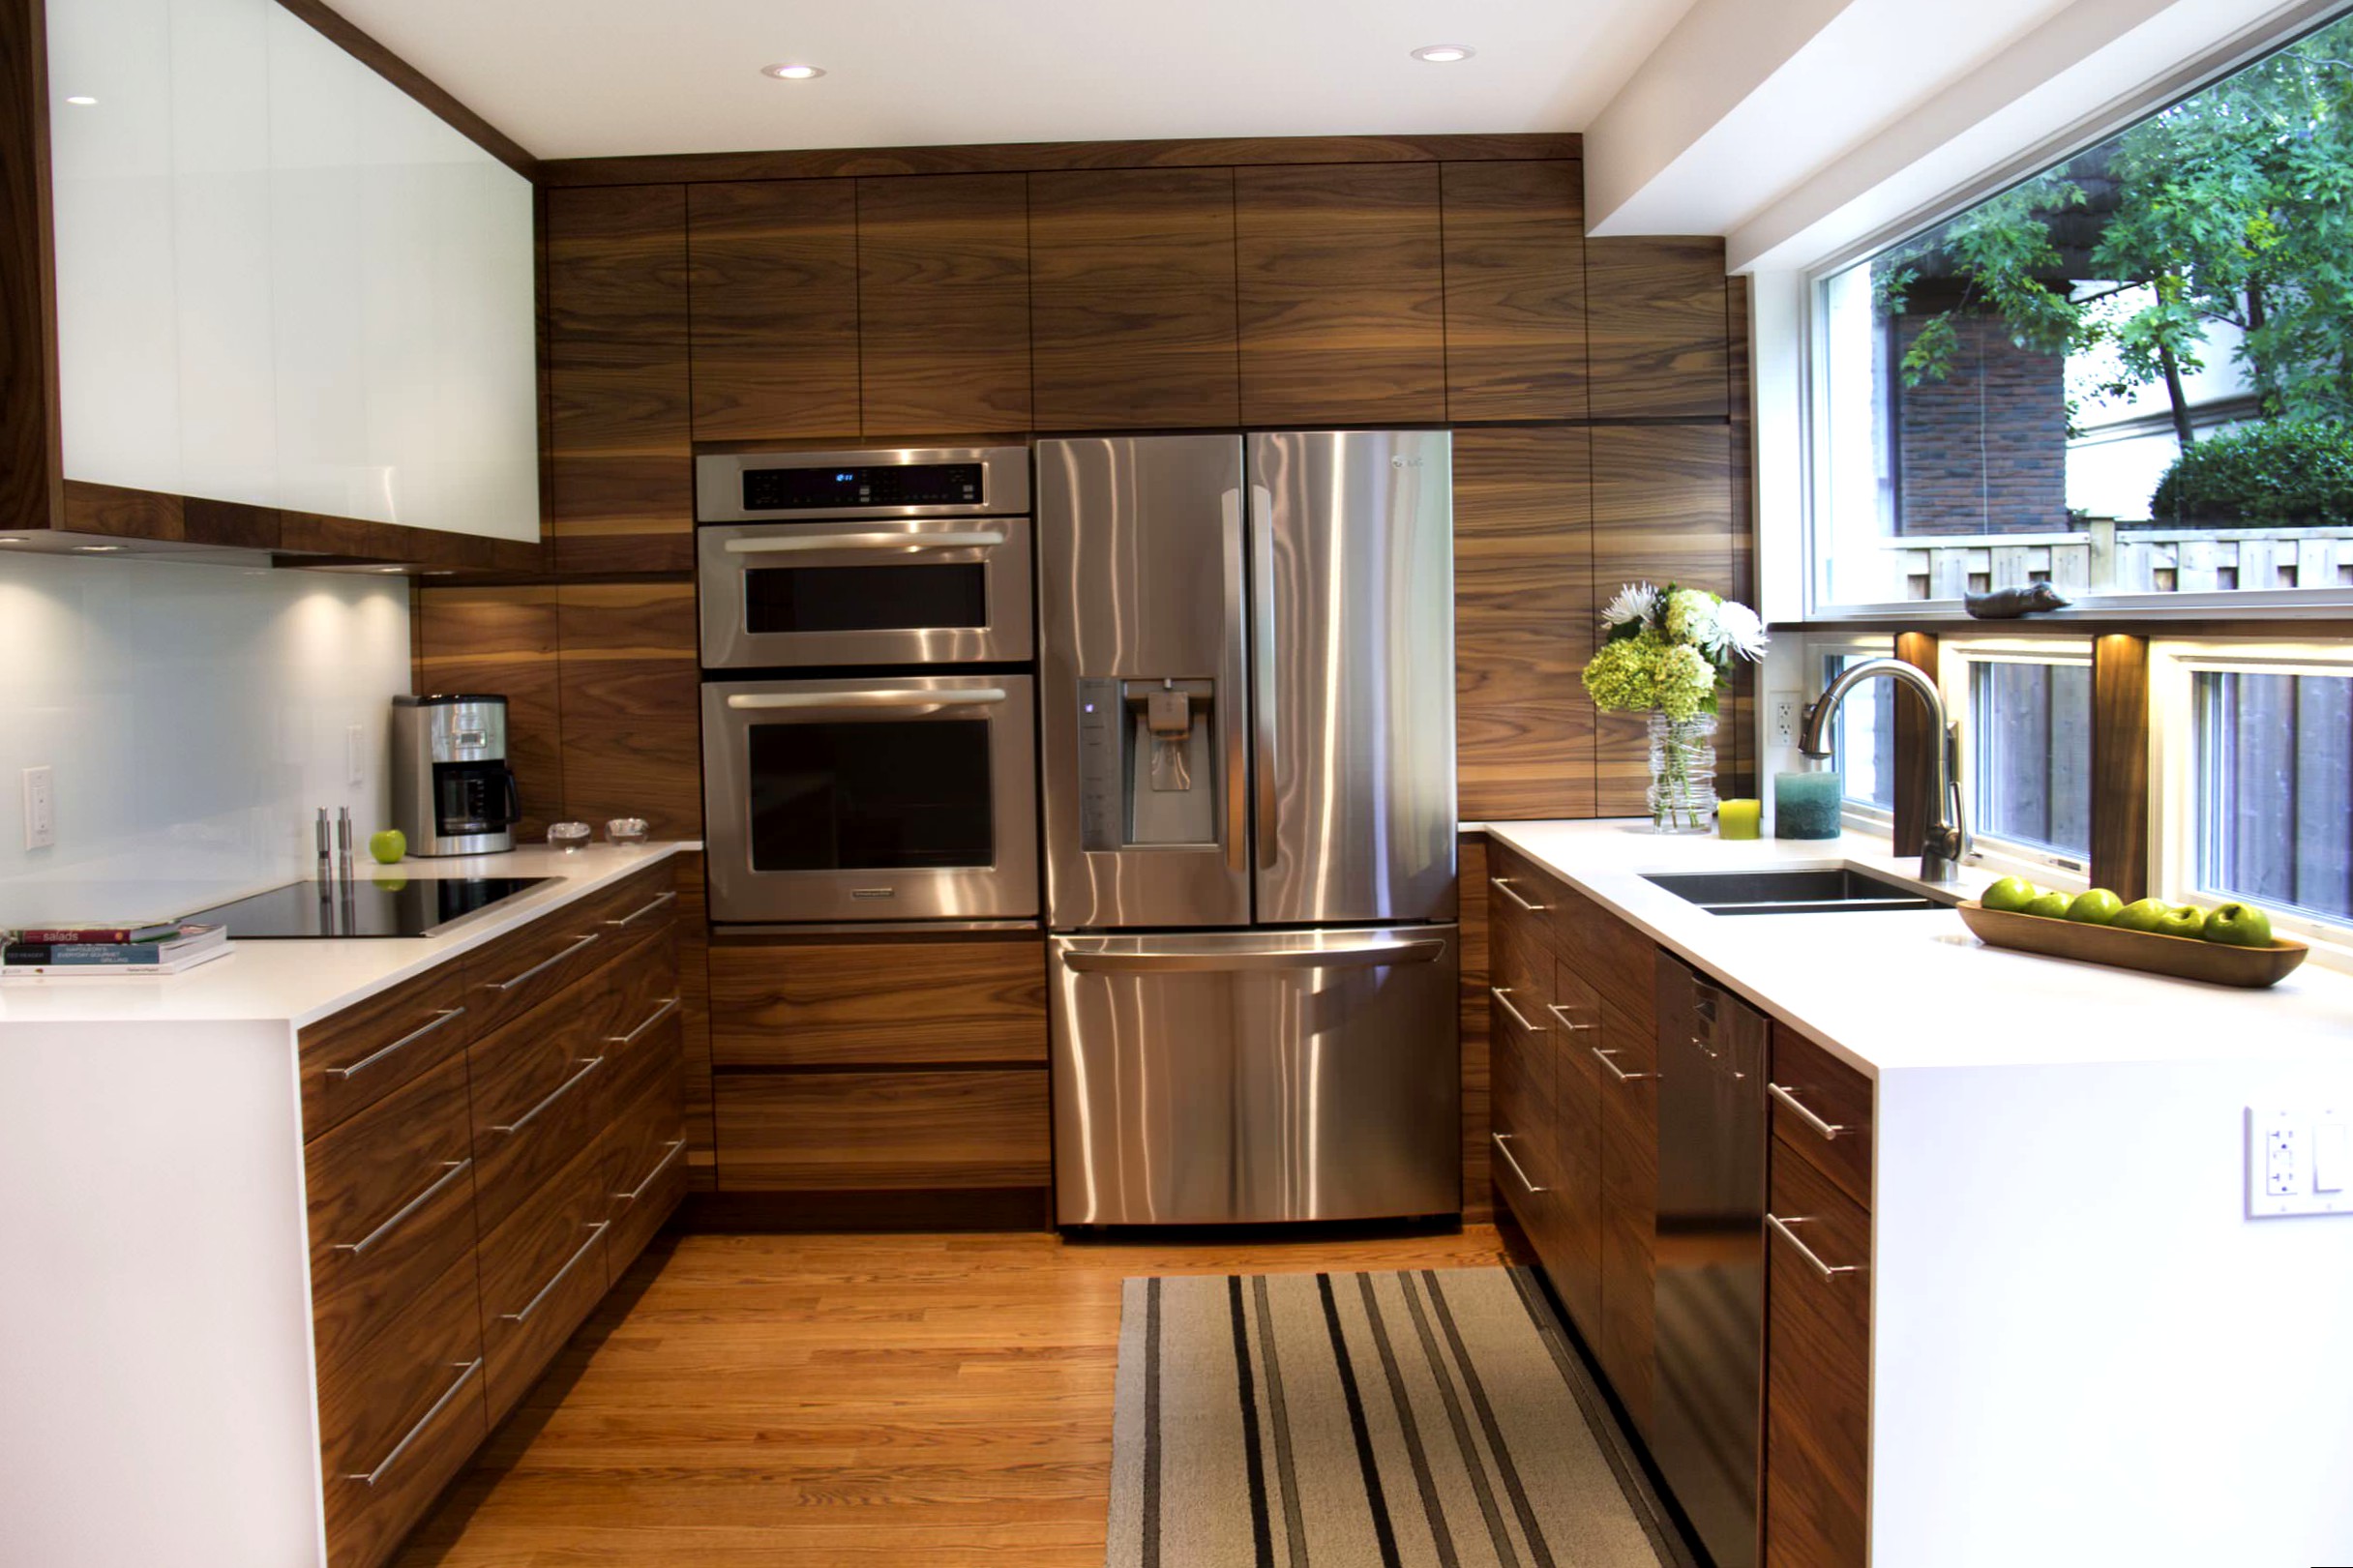 встроенная кухонная мебель, встроенный кухонный гарнитур, встроенная кухня на заказ, дизайн встроенной кухни